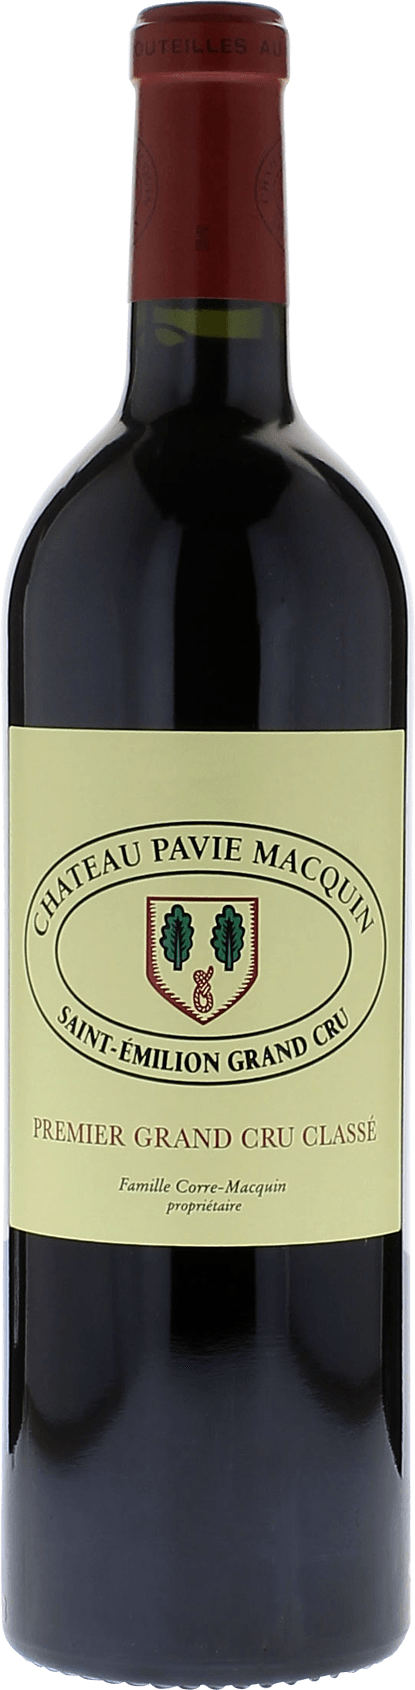 Pavie macquin 1993  Saint-Emilion, Bordeaux rouge